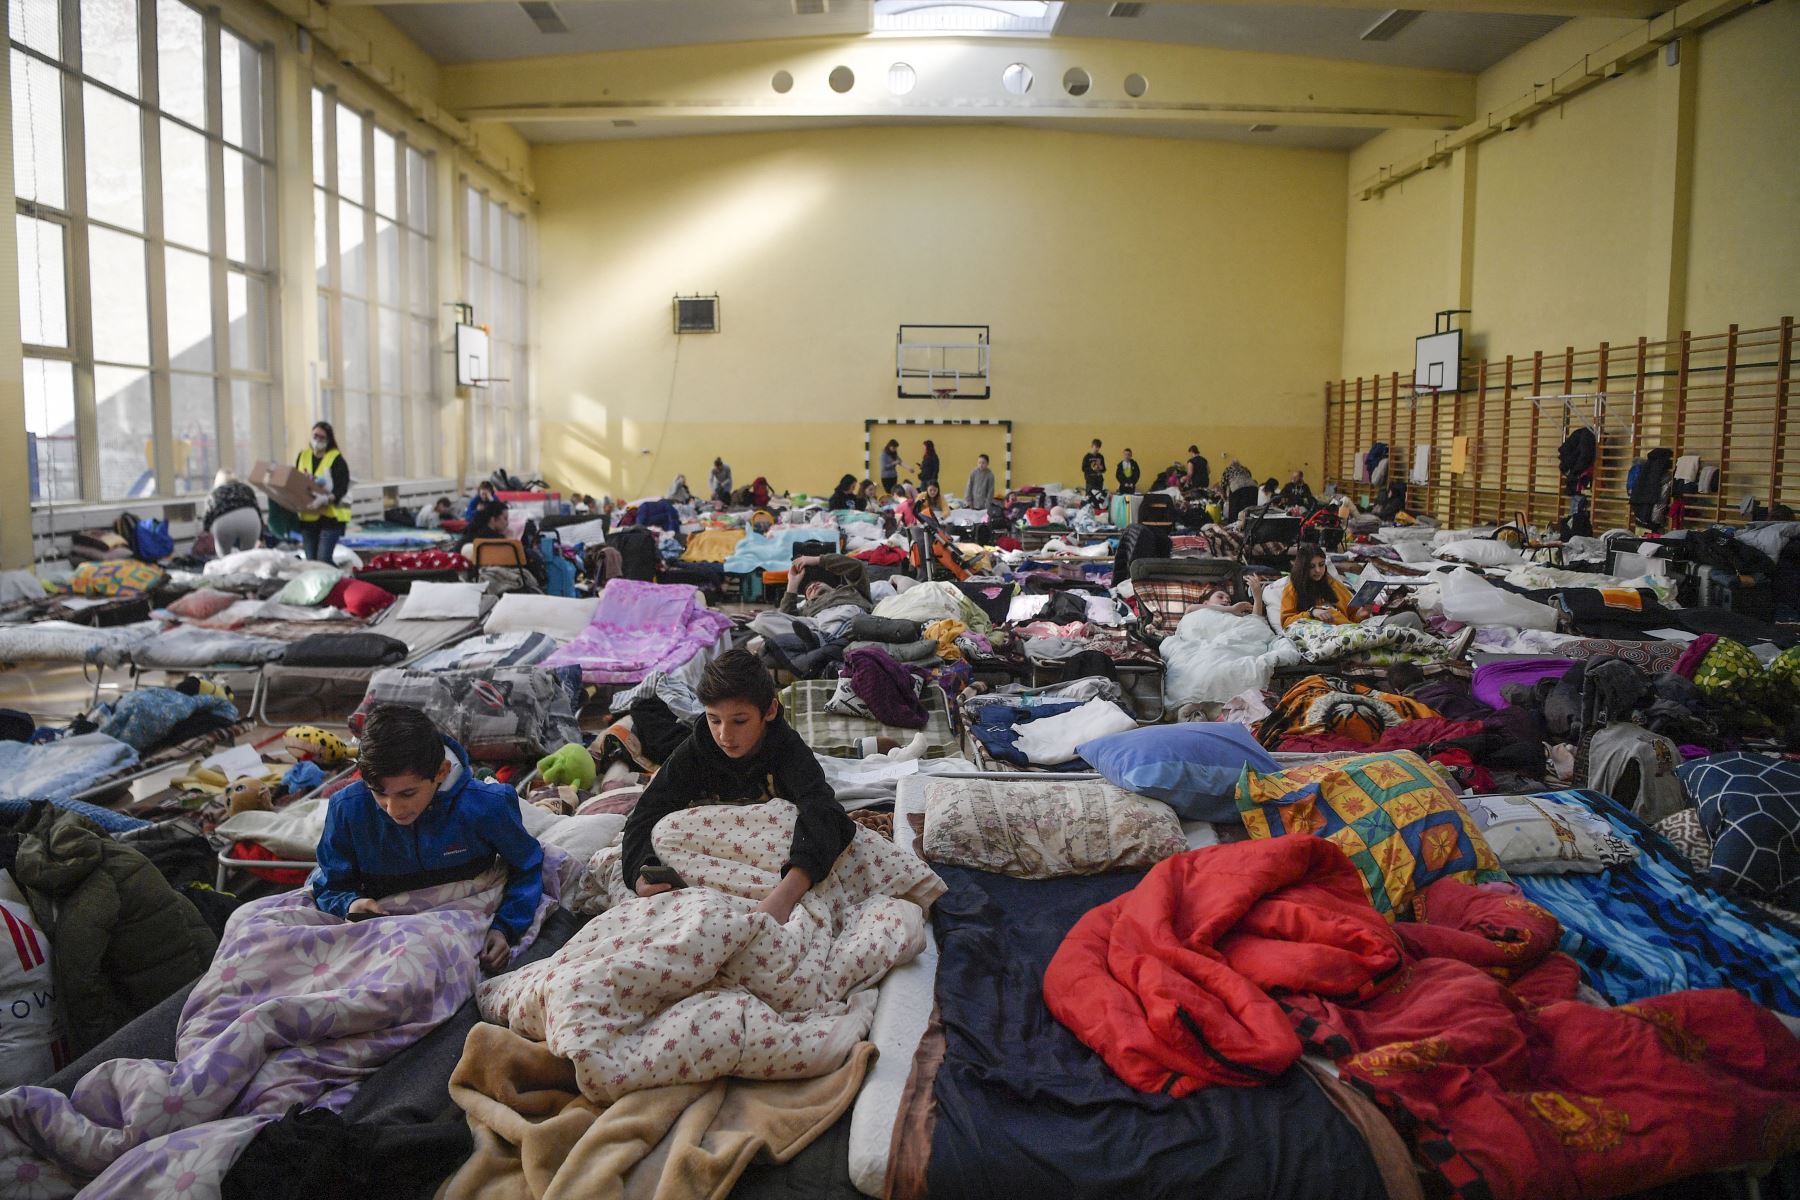 Los niños descansan en un refugio temporal para refugiados de Ucrania en una escuela en Przemysl, cerca de la frontera entre Ucrania y Polonia.
Foto: AFP